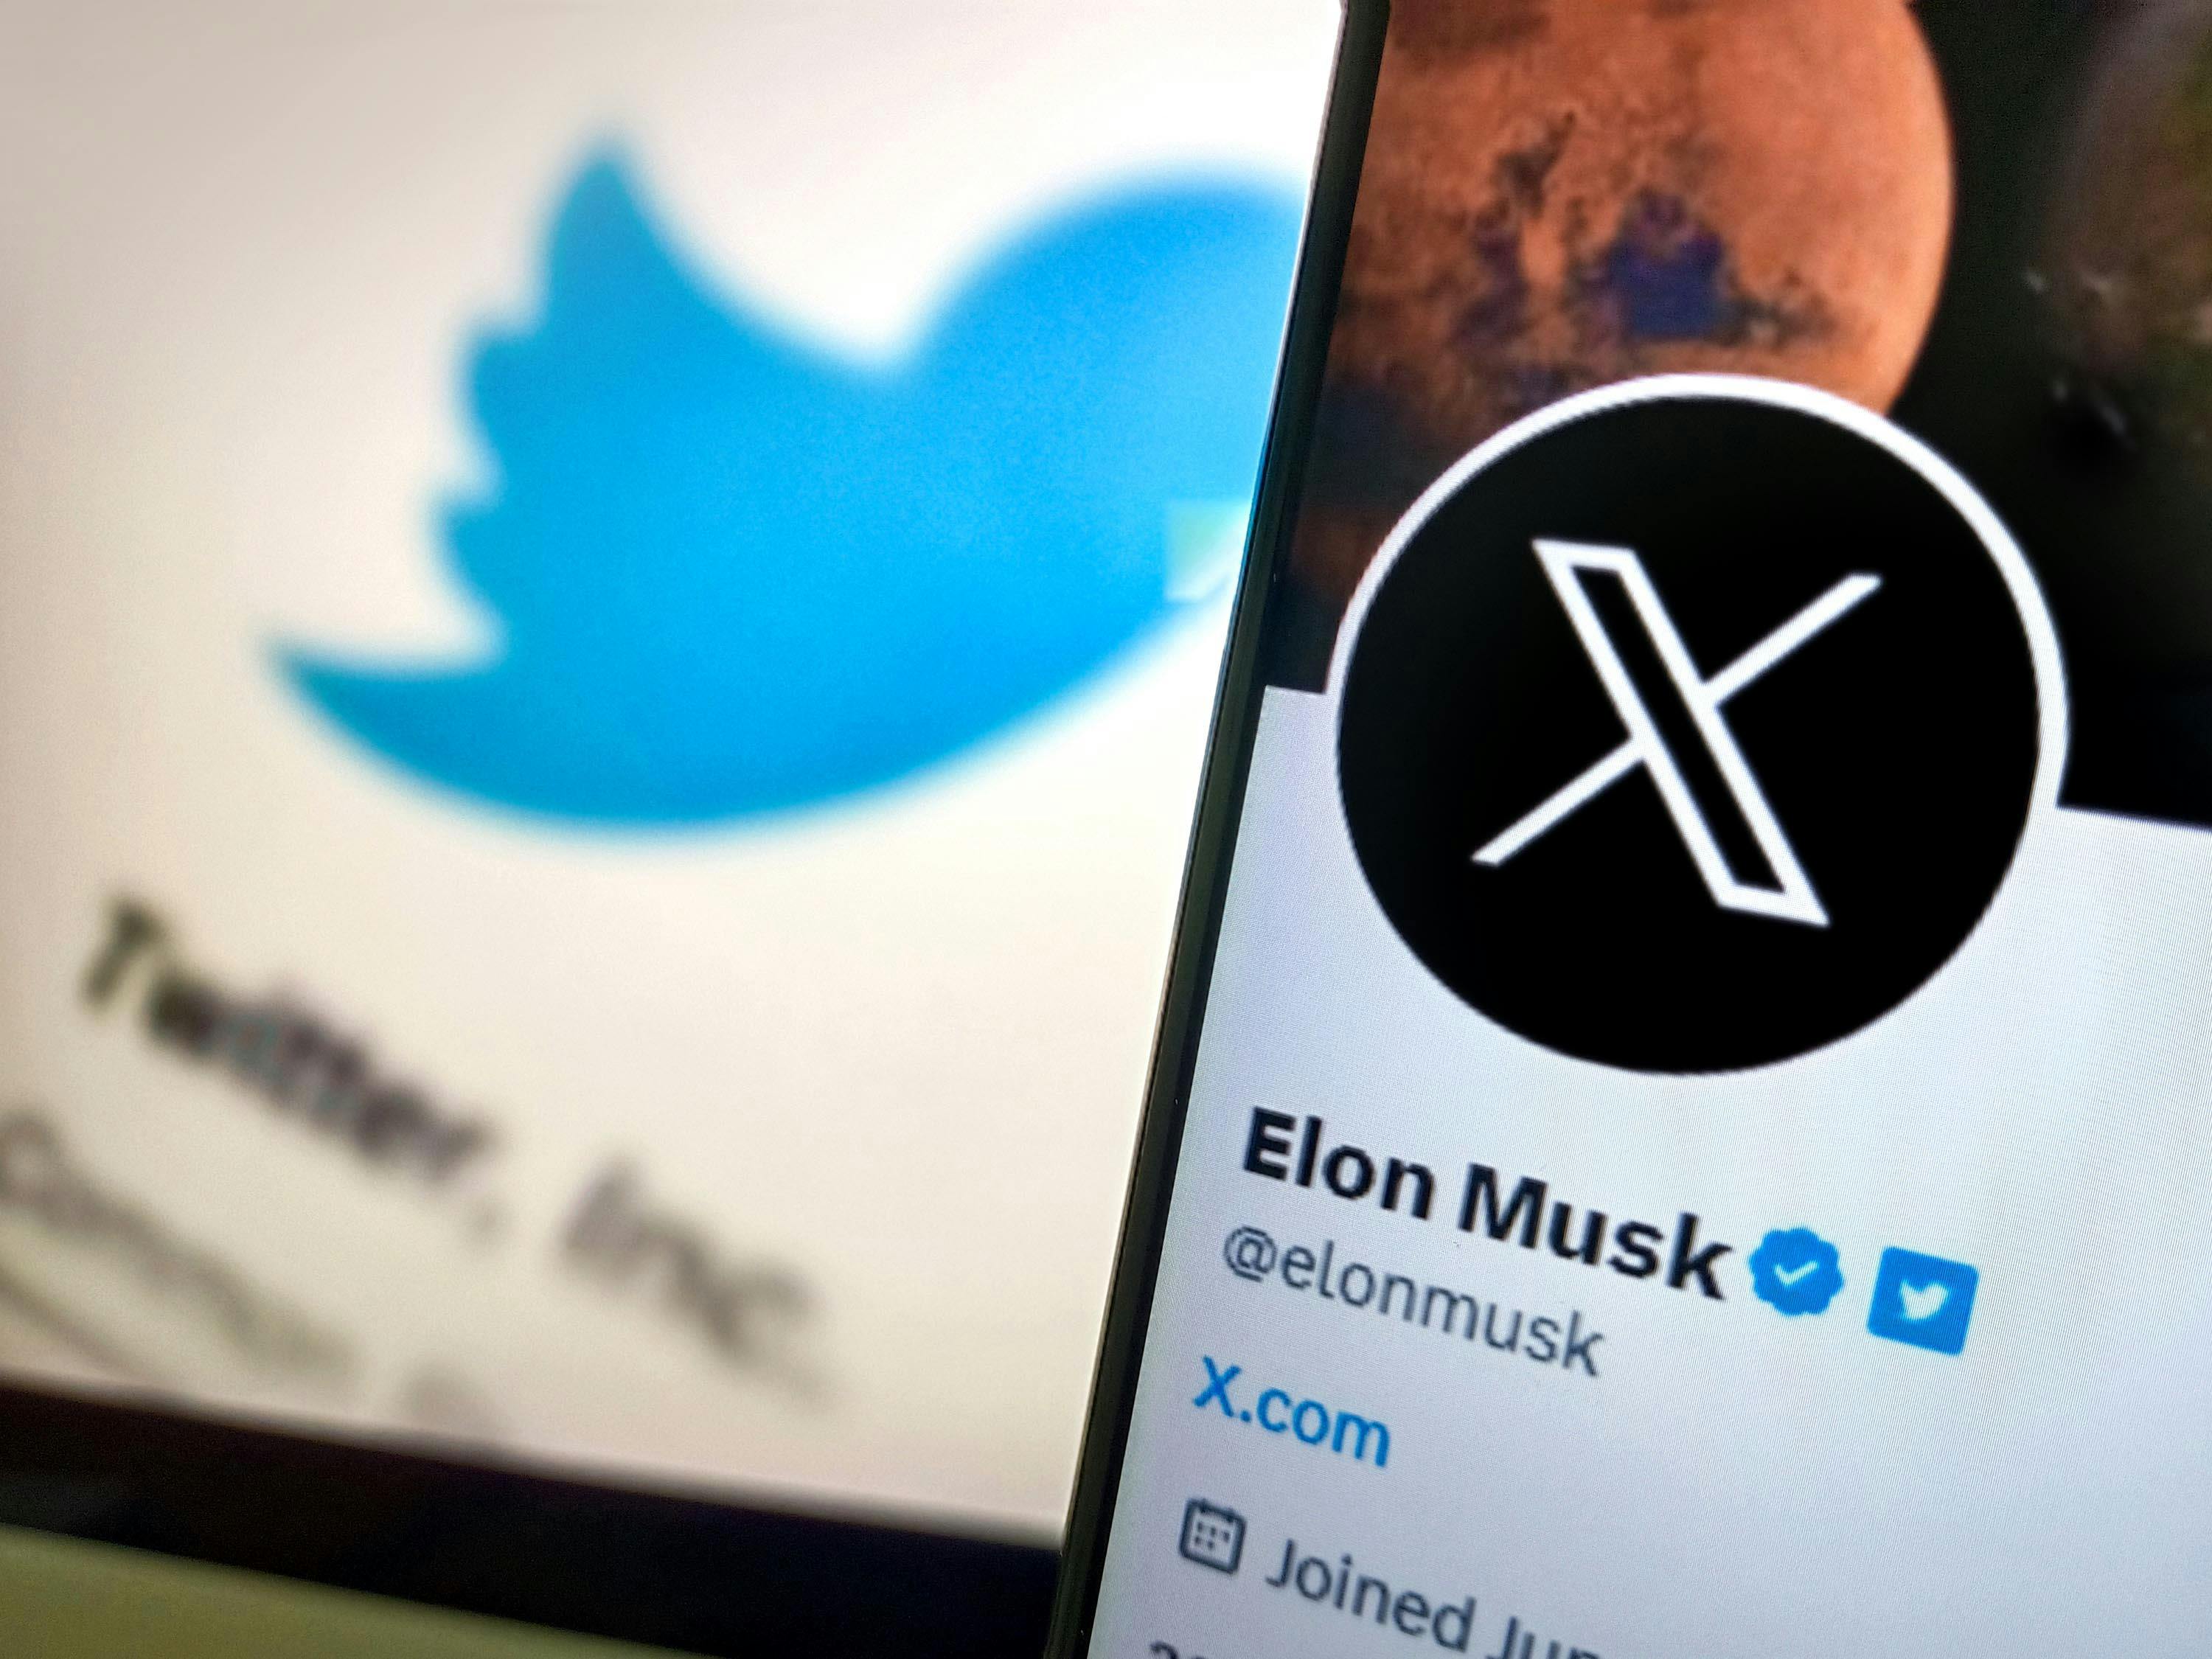 Elon Musk next to Twitter's new X Rebrand